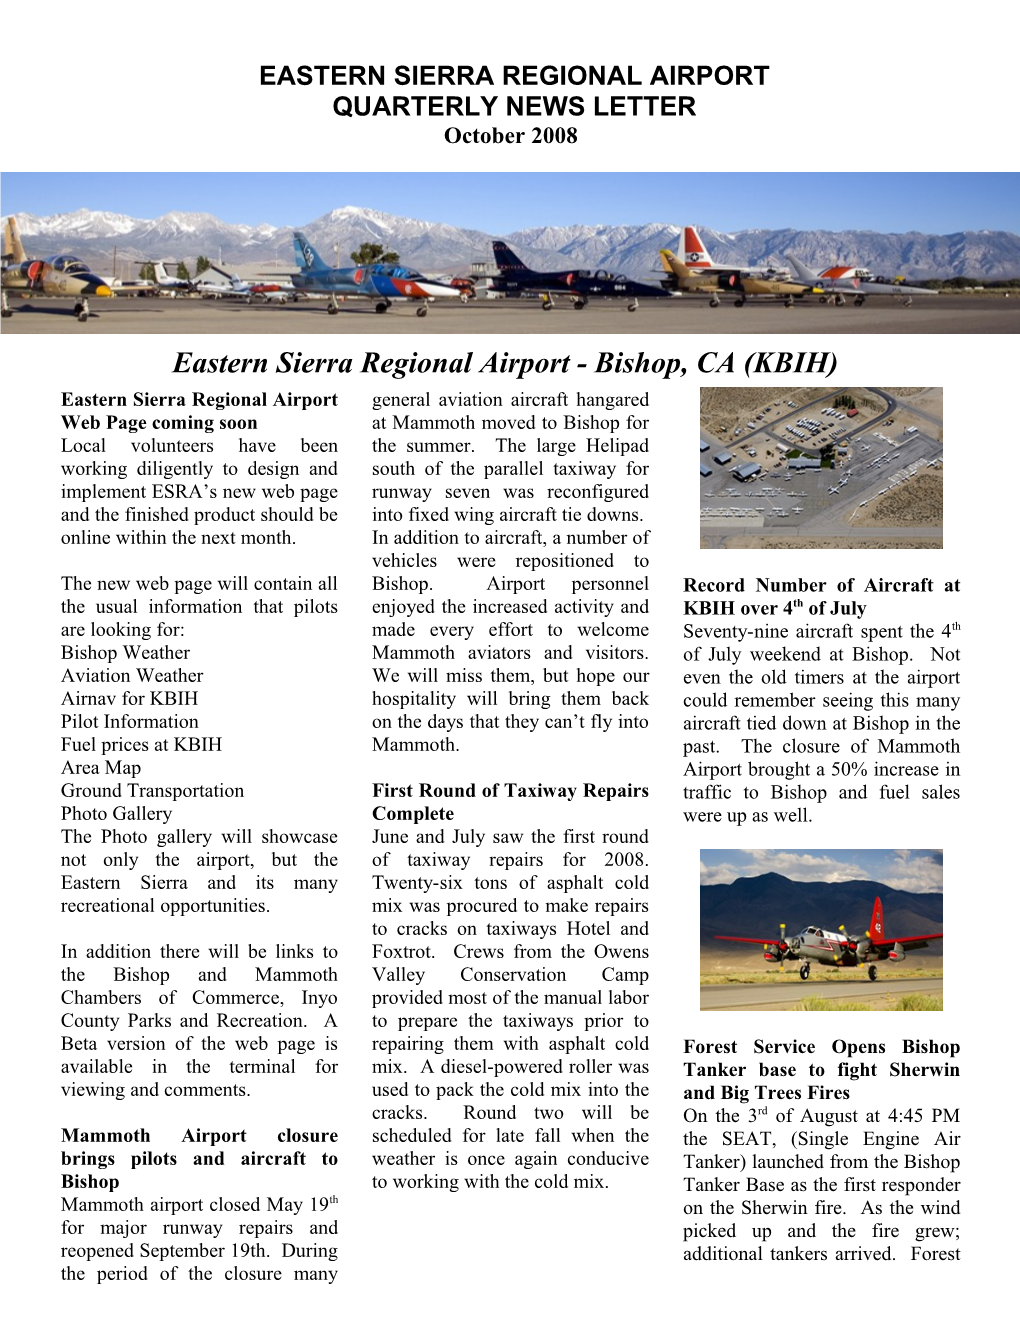 Eastern Sierra Regional Airport Quarterly News Letter